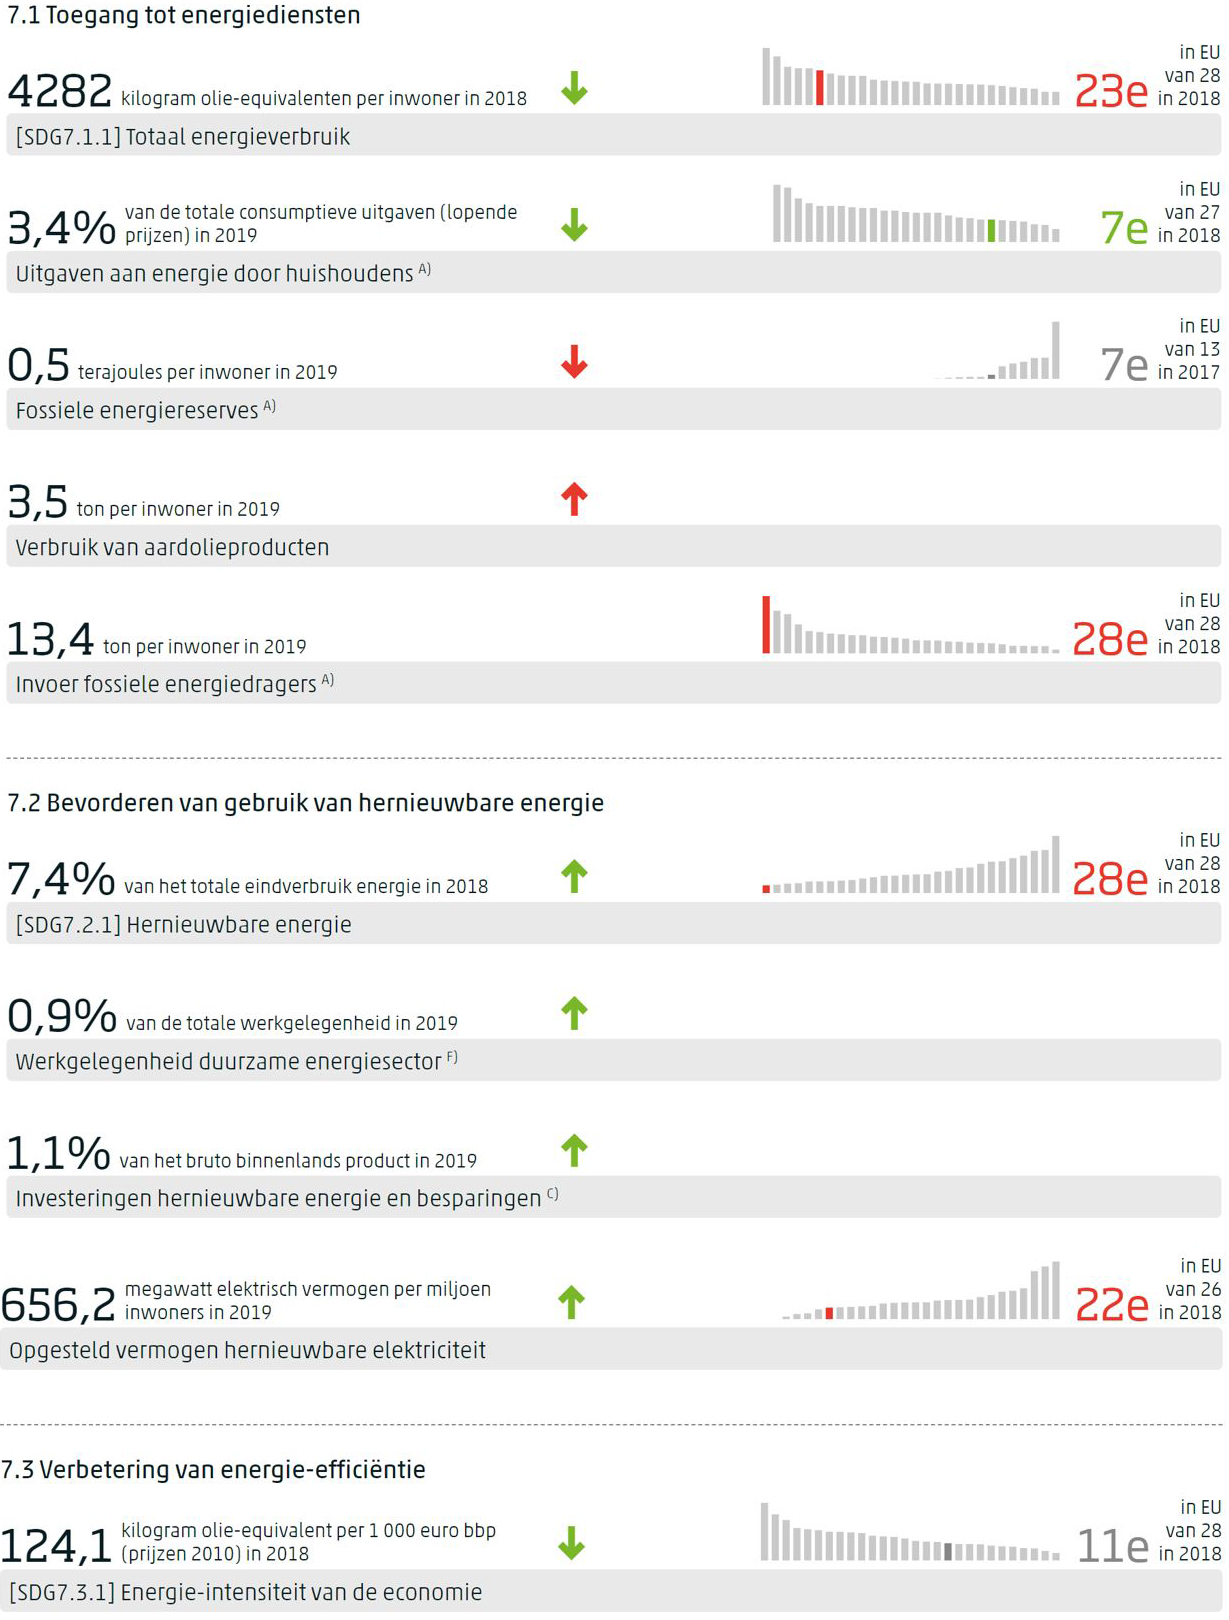 Dashboard voor SDG 7 met per indicator de meest recente waarde, de trend op middellange termijn indien gemeten, en de positie van Nederland in de EU indien waargenomen.